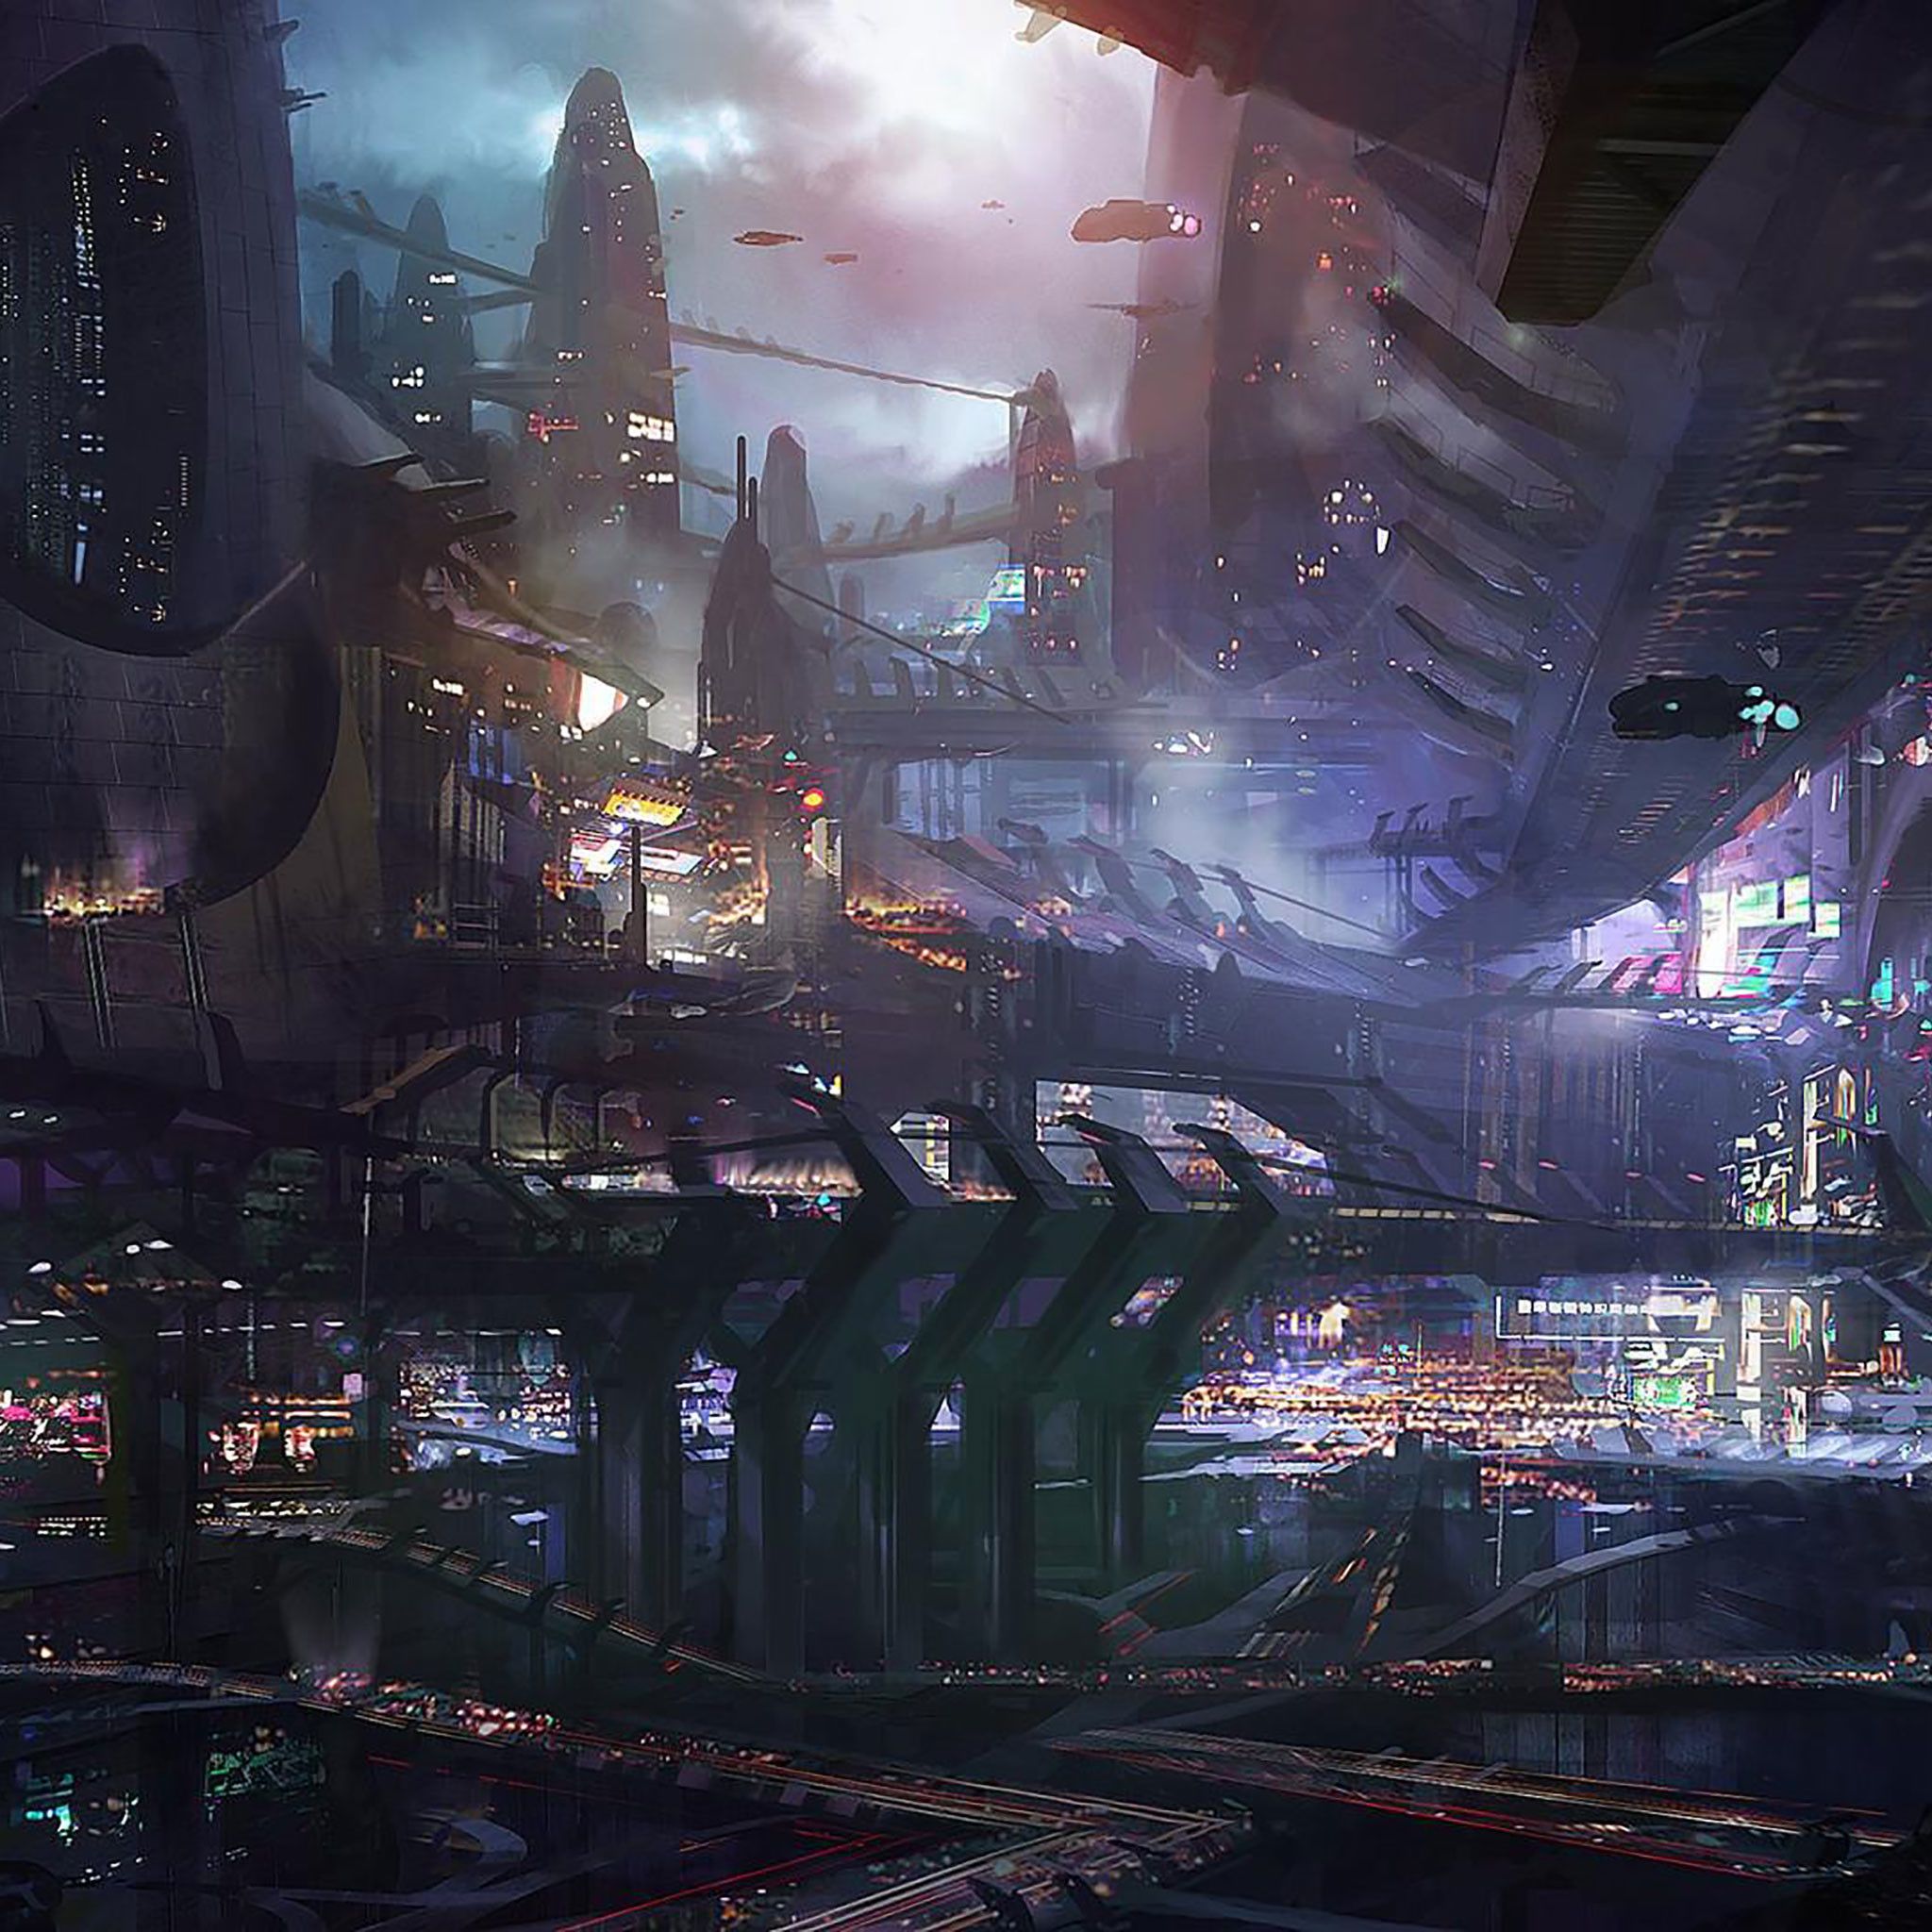 Cyberpunk Futuristic City Raining Street Lights People Tap To